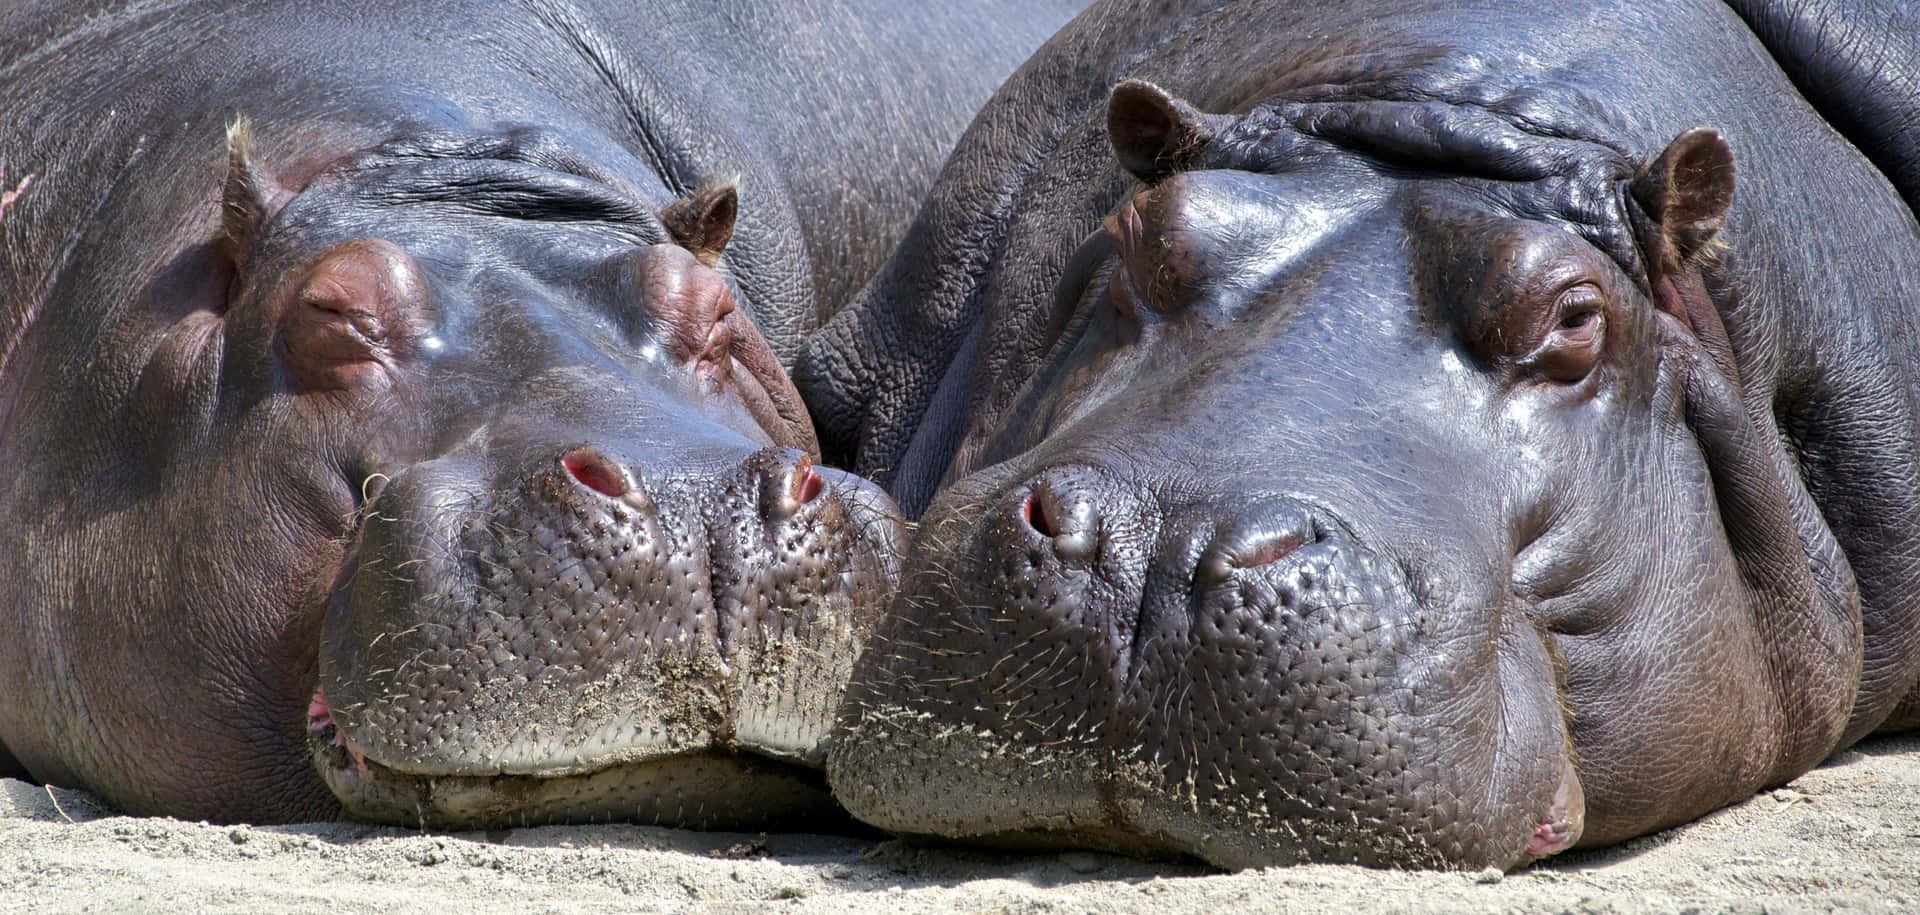 Imagemde Hipopótamos Grandes Se Abraçando Carinhosamente